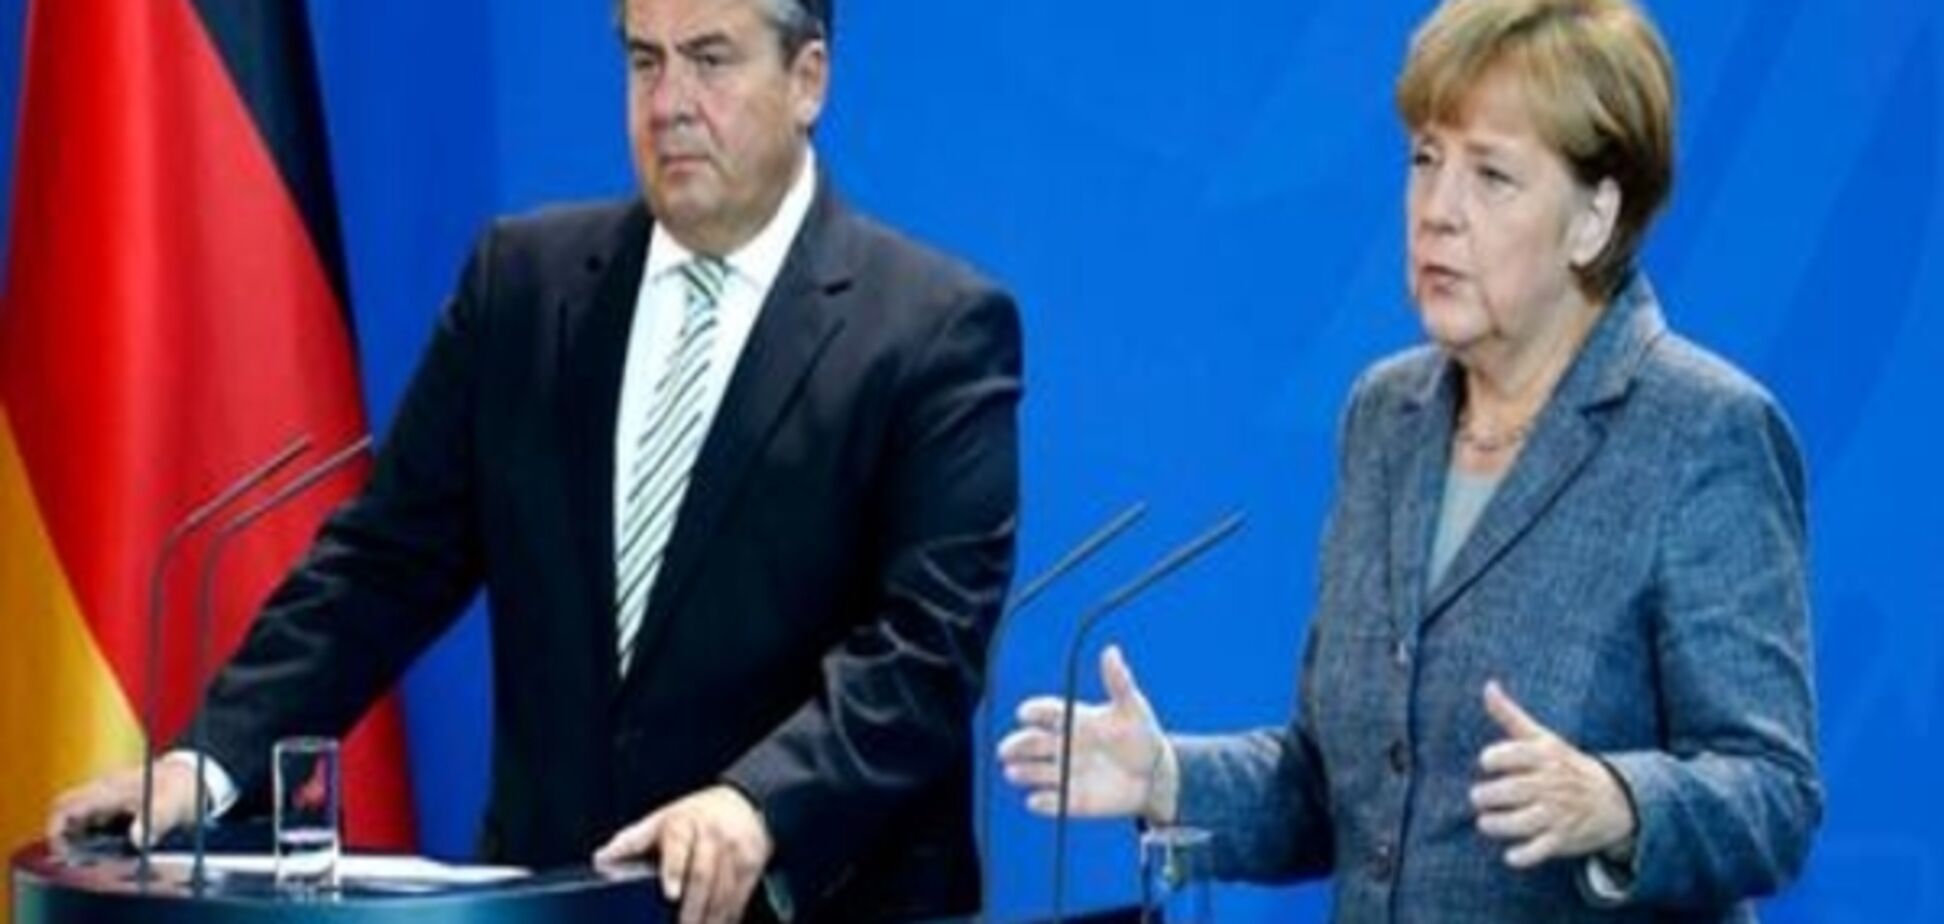 Зіґмар Ґабріель відмовився змагатися з Меркель за посаду канцлера